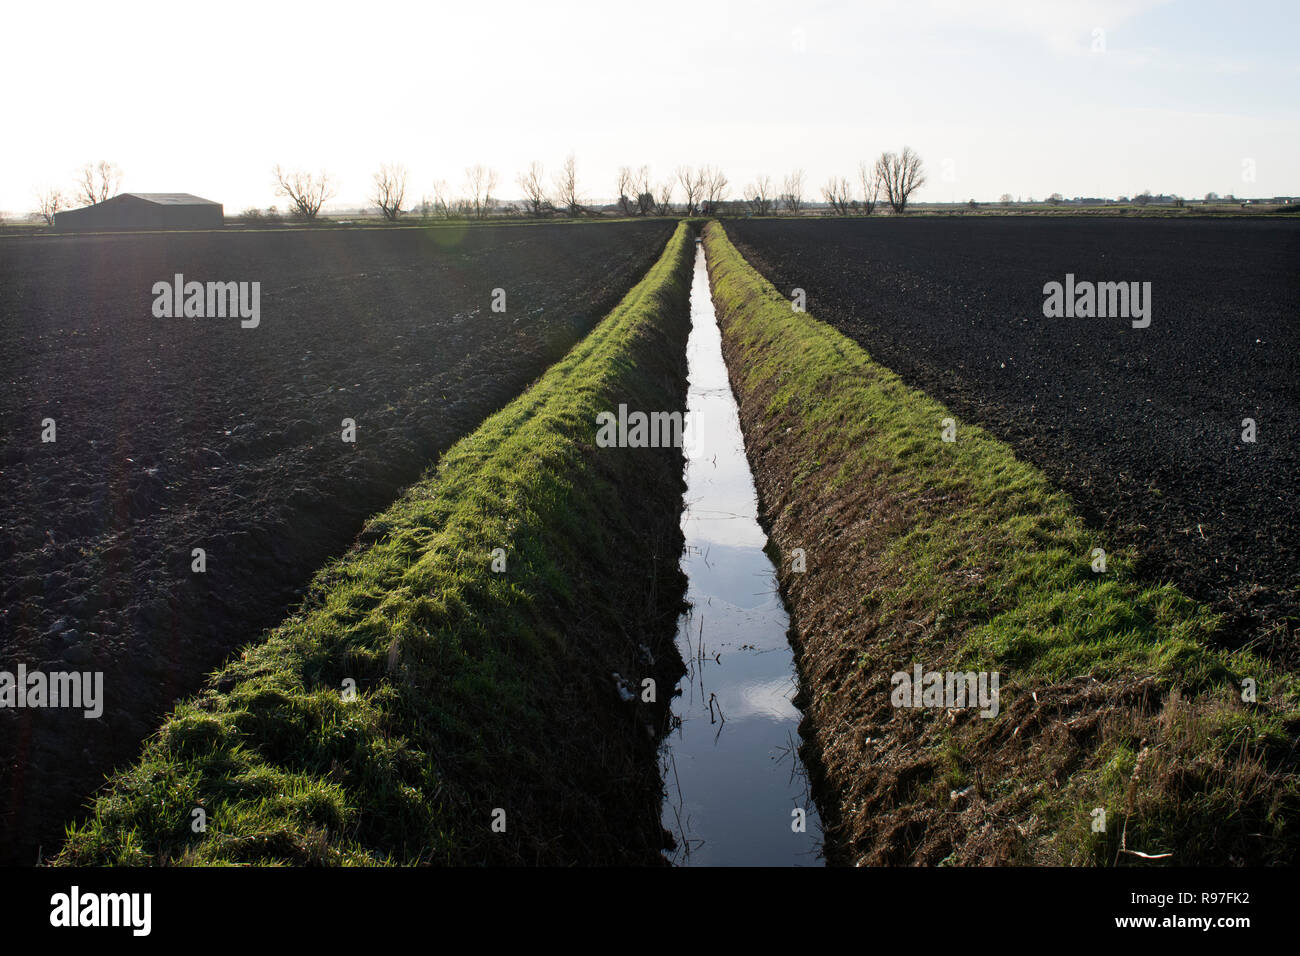 Fens East Anglia fenland paysage une digue un fossé de drainage. Années 2010 Southerly Norfolk UK 2018 HOMER SYKES Banque D'Images